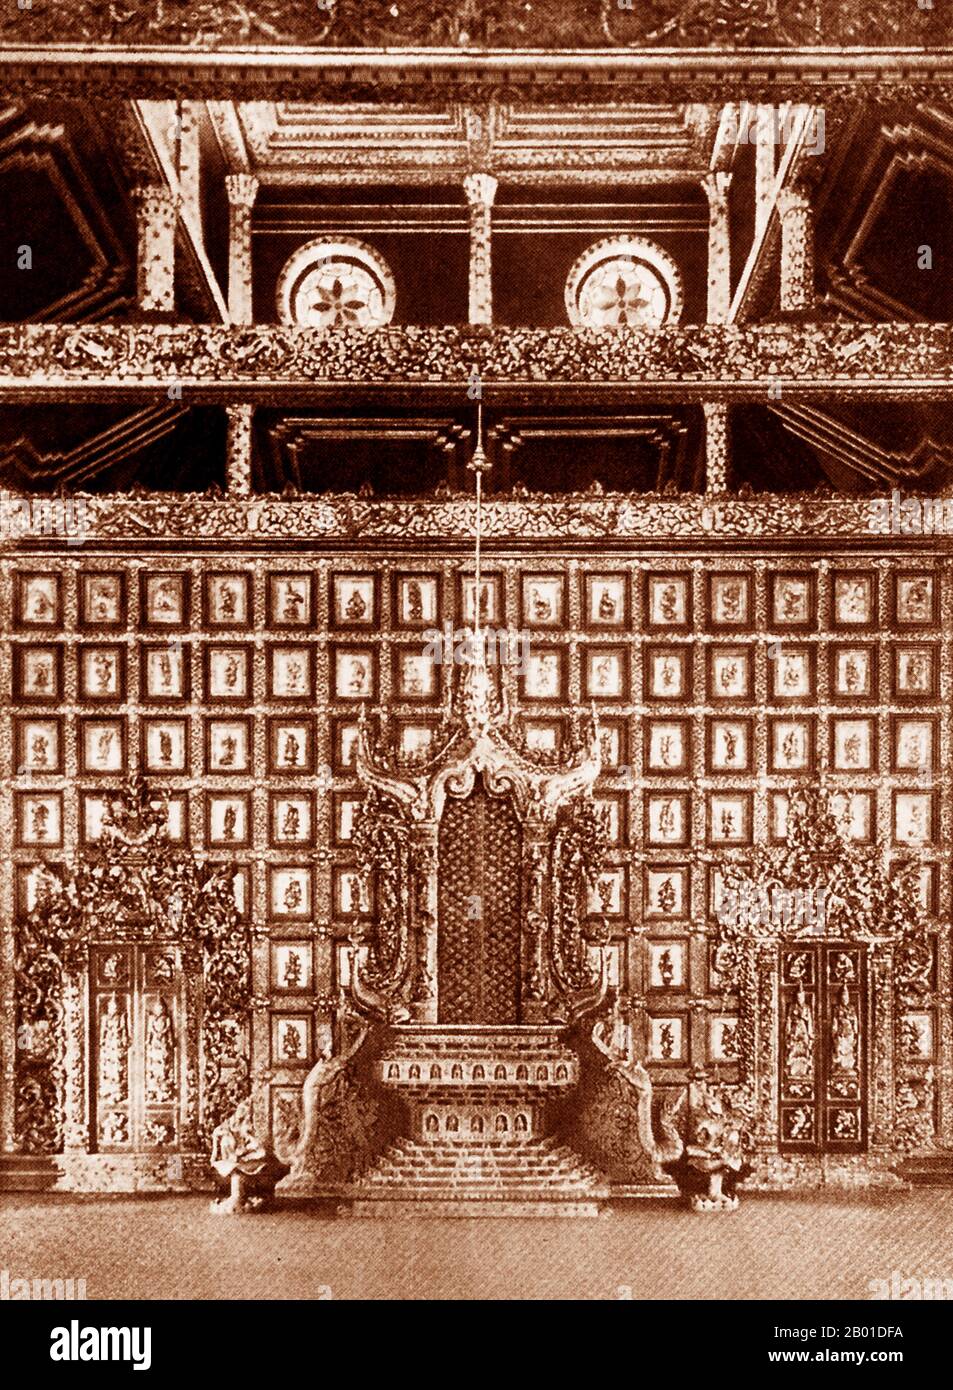 Birmanie : le trône des abeilles (Bhamarasana) du palais Mandalay, vers 1892-1896. Le trône des abeilles (Bhamarasana) est ainsi appelé parce qu'il était orné de figures d'abeilles dans les petites niches au fond du piédestal. Il est fait à partir du bois d'un arbre de karaway. Aujourd'hui, il est logé dans la salle est du palais Mandalay, le dernier palais royal du dernier monarque birman, le roi Mindon, qui a construit le palais entre 1857 et 1859 dans le cadre de la fondation de la nouvelle capitale royale de Mandalay. La conquête britannique de la Birmanie a commencé en 1824 en réponse à une tentative birmane d'envahir l'Inde. Banque D'Images